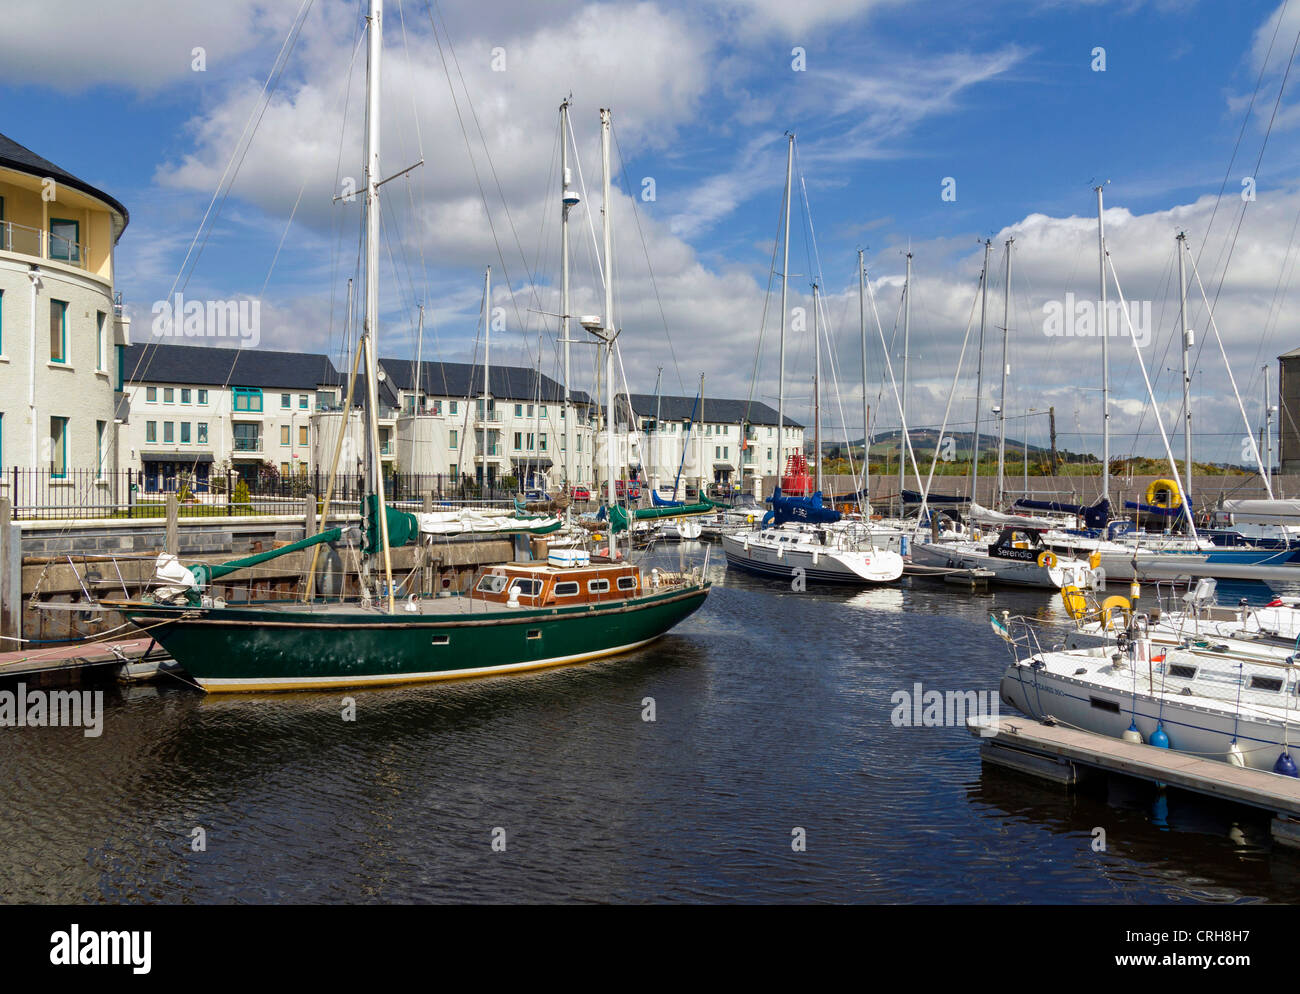 Marina à Arklow, comté de Wicklow, Irlande Banque D'Images